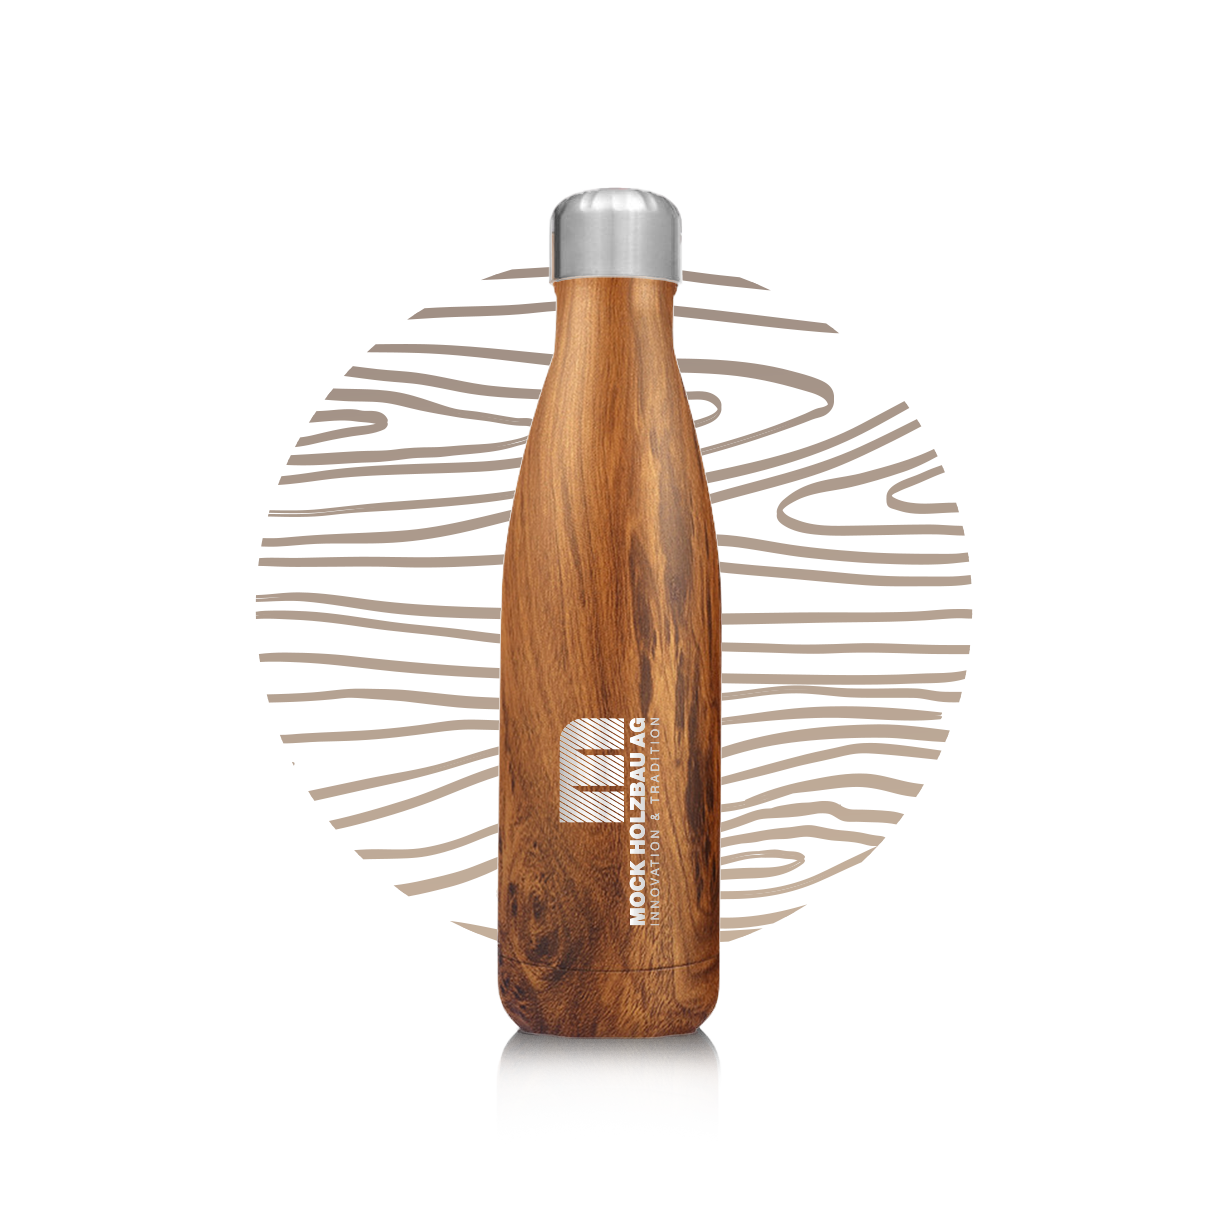 Edelstahlflasche im Holz Design mit Firmenlogo